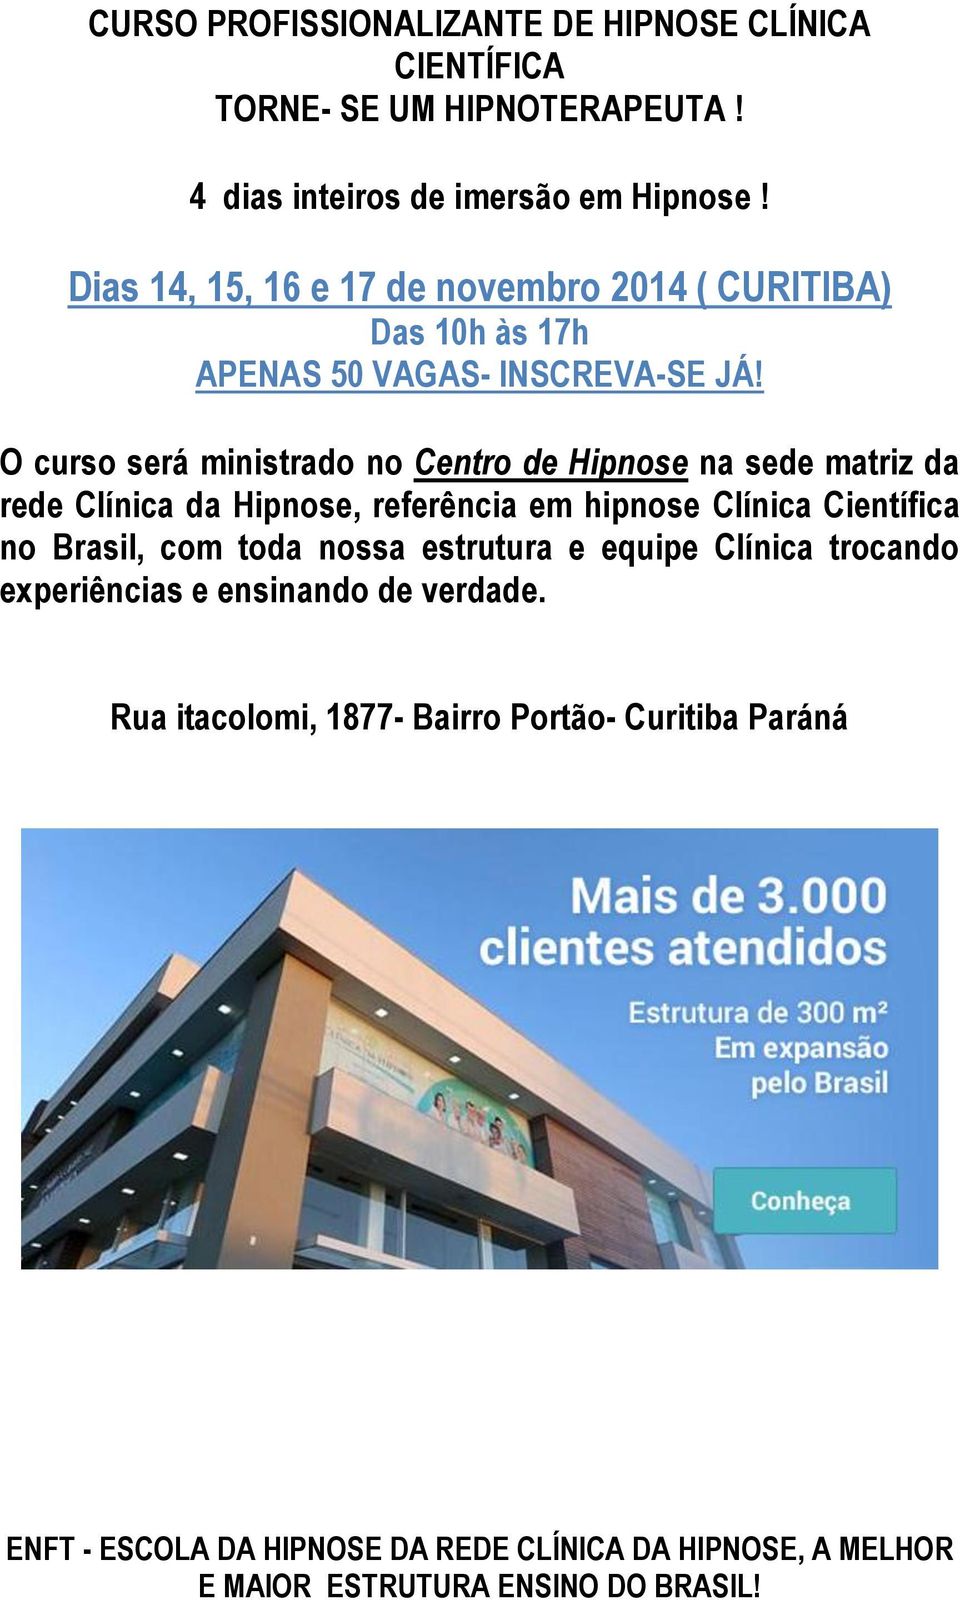 O curso será ministrado no Centro de Hipnose na sede matriz da rede Clínica da Hipnose, referência em hipnose Clínica Científica no Brasil, com toda